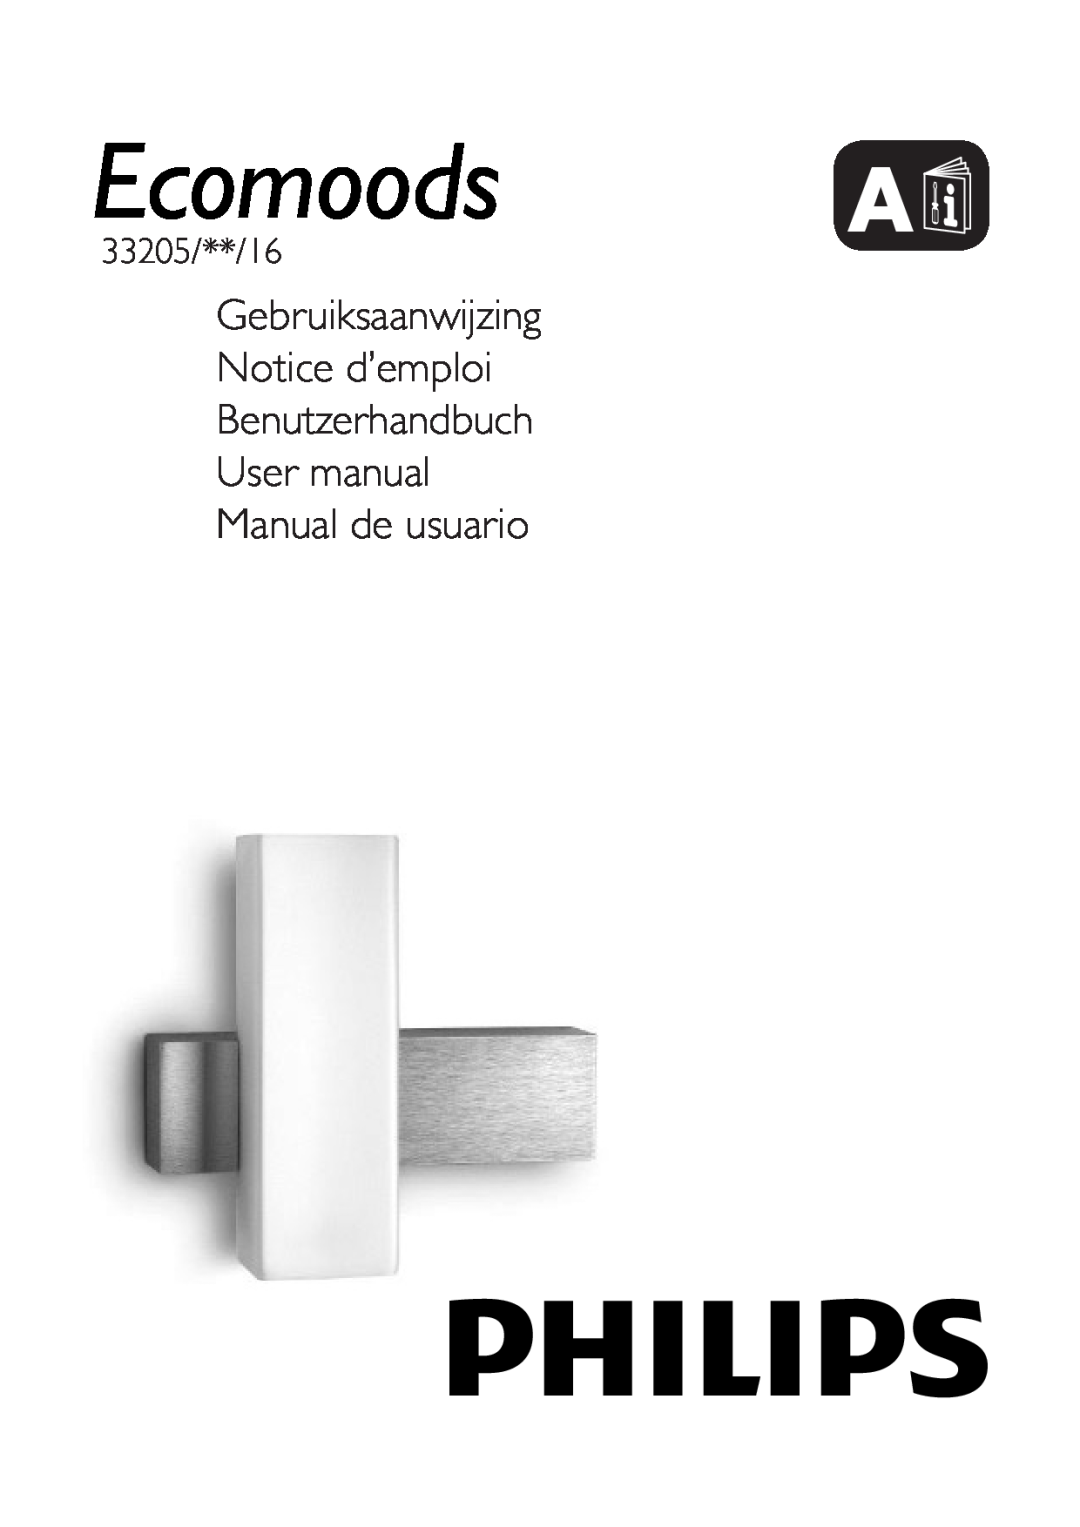 Philips 33205 user manual Gebruiksaanwijzing Notice d’emploi, Benutzerhandbuch User manual Manual de usuario, Ecomoods A 